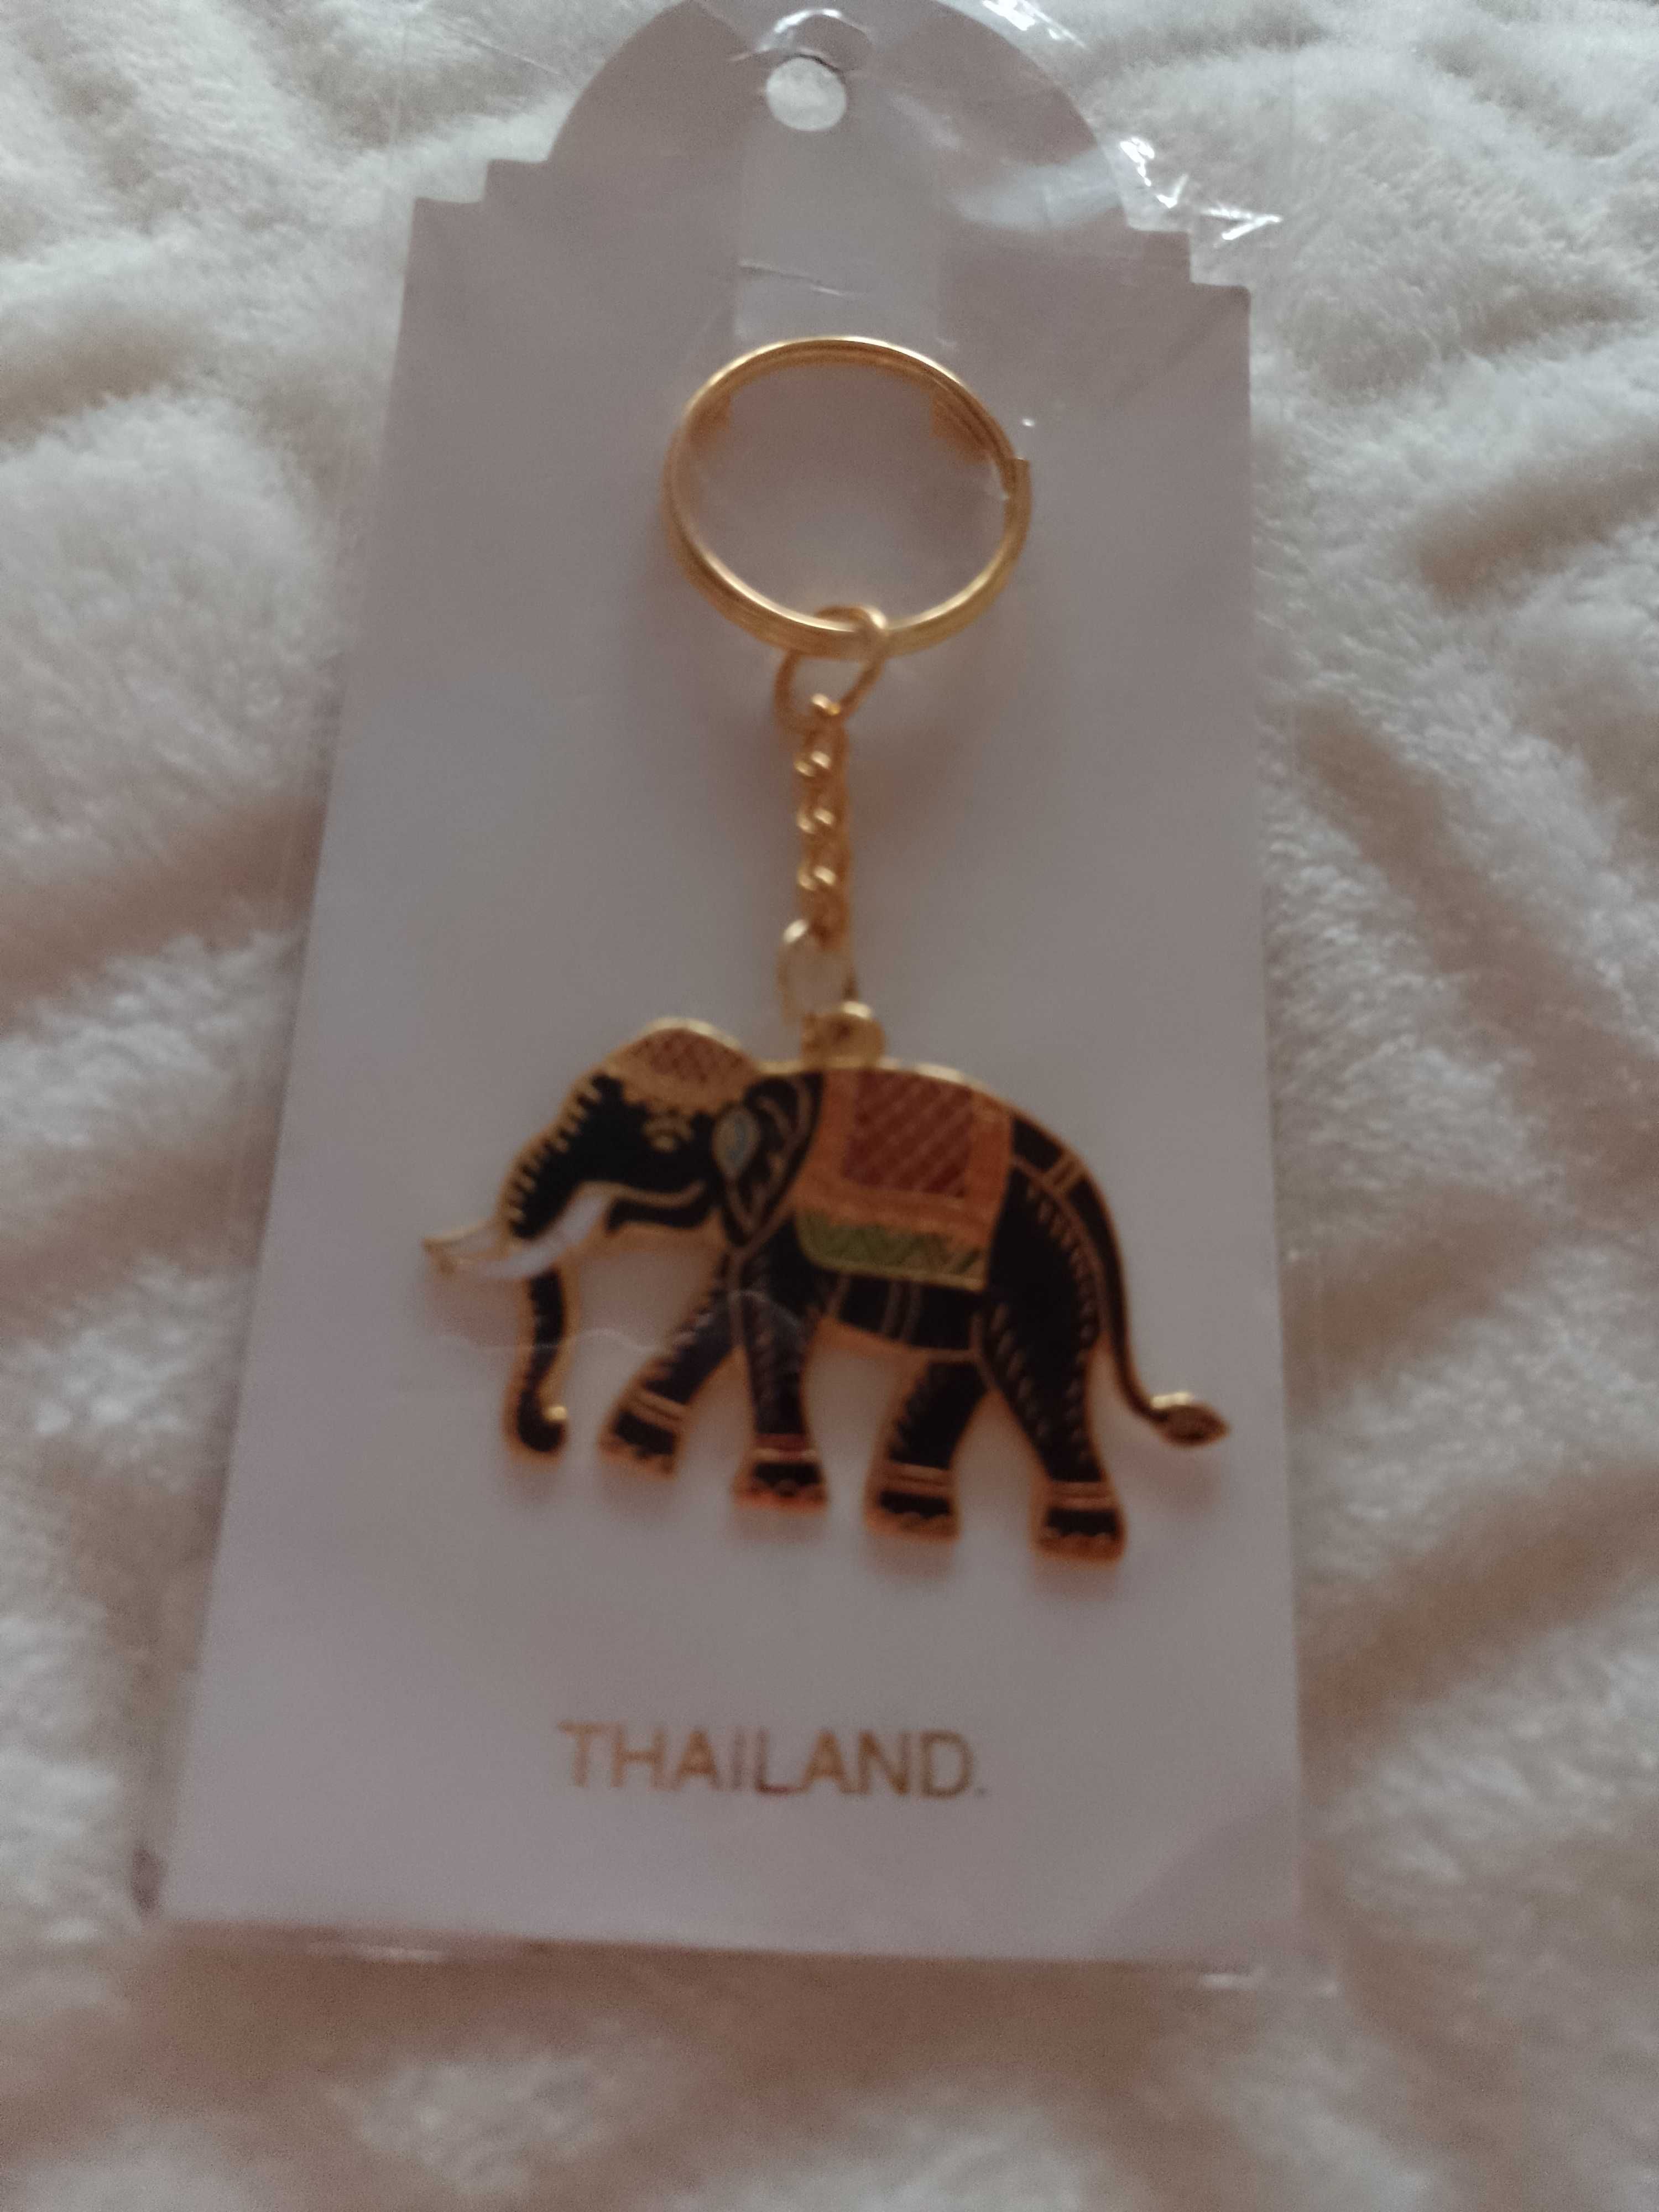 Thailand/Oryginalny breloczek/ zawieszka z Tajlandii, NOWY